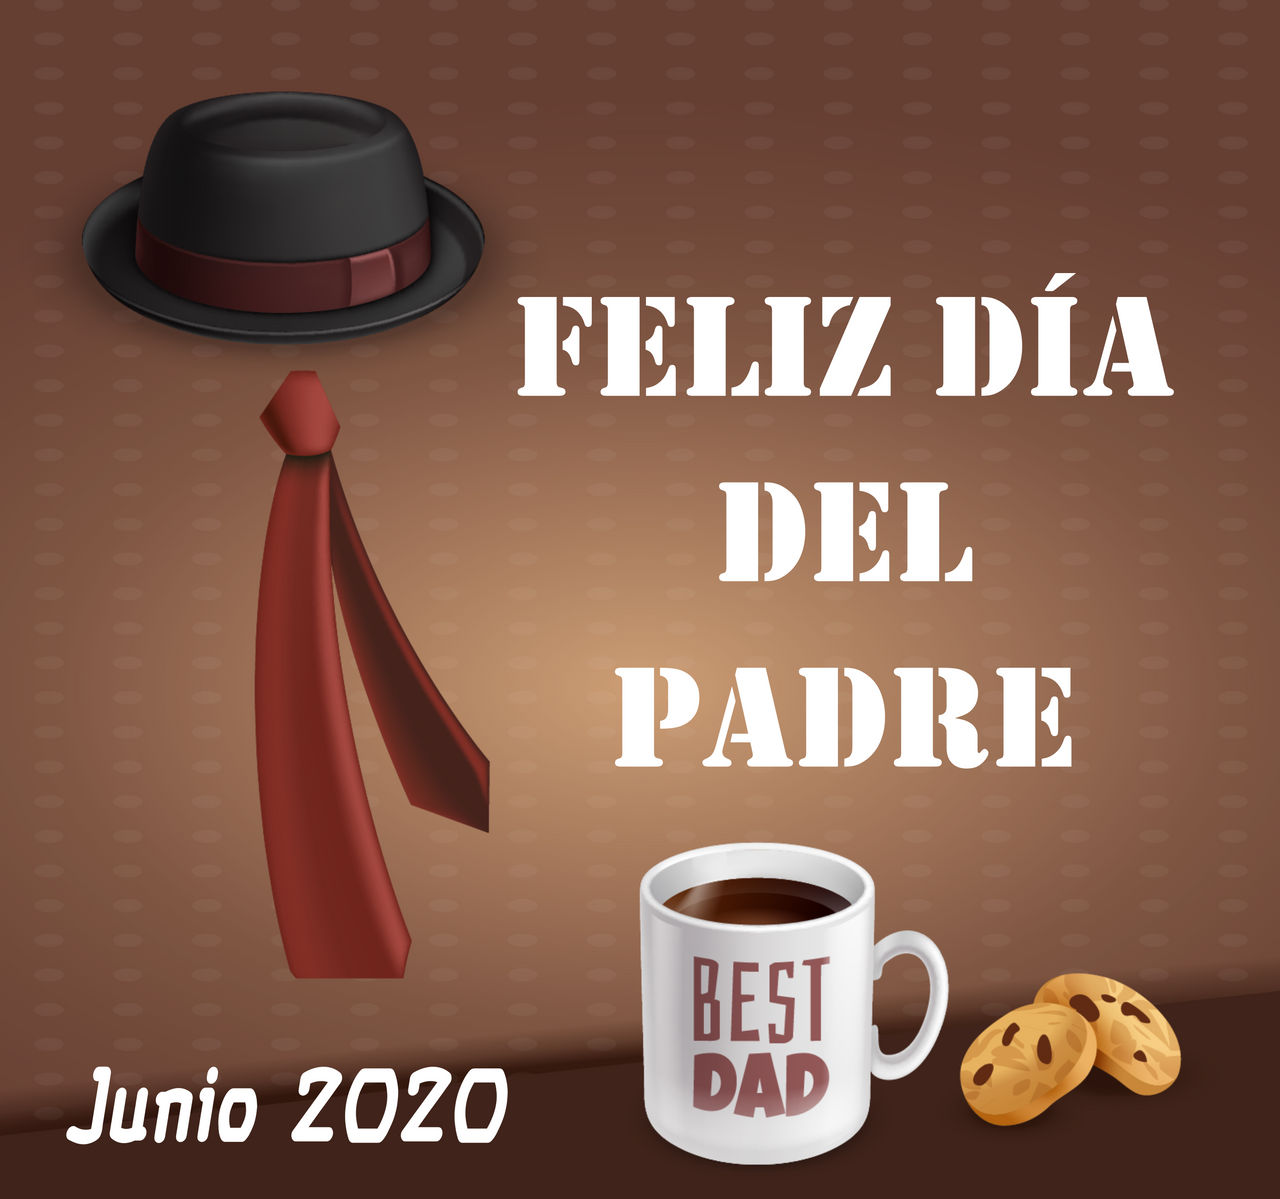 Feliz-dia-del-padre-2020 by Creaciones-Jean on DeviantArt